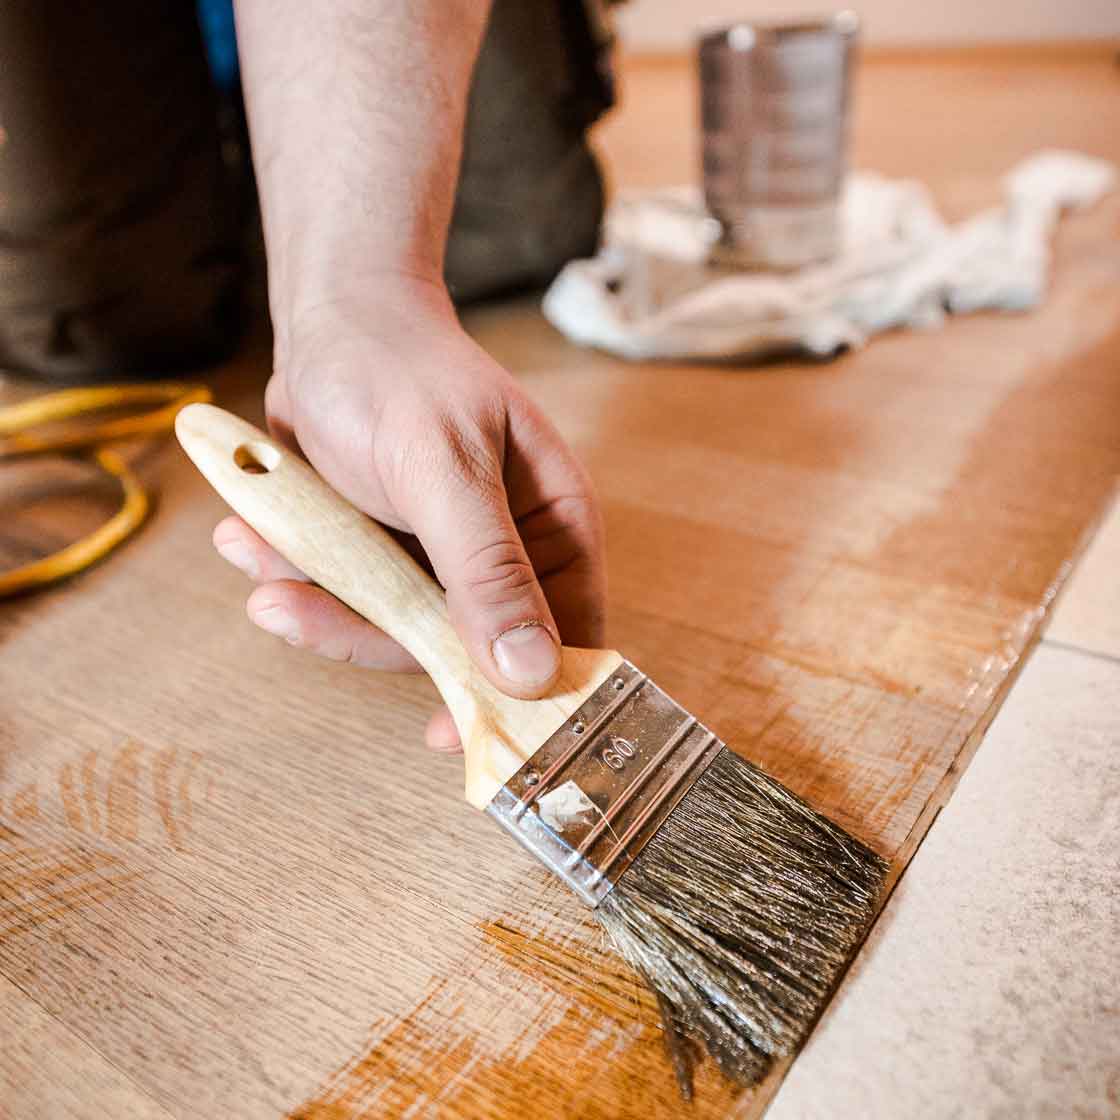 Bild zeigt Detailfoto beim Ölen eines Holzbodens.